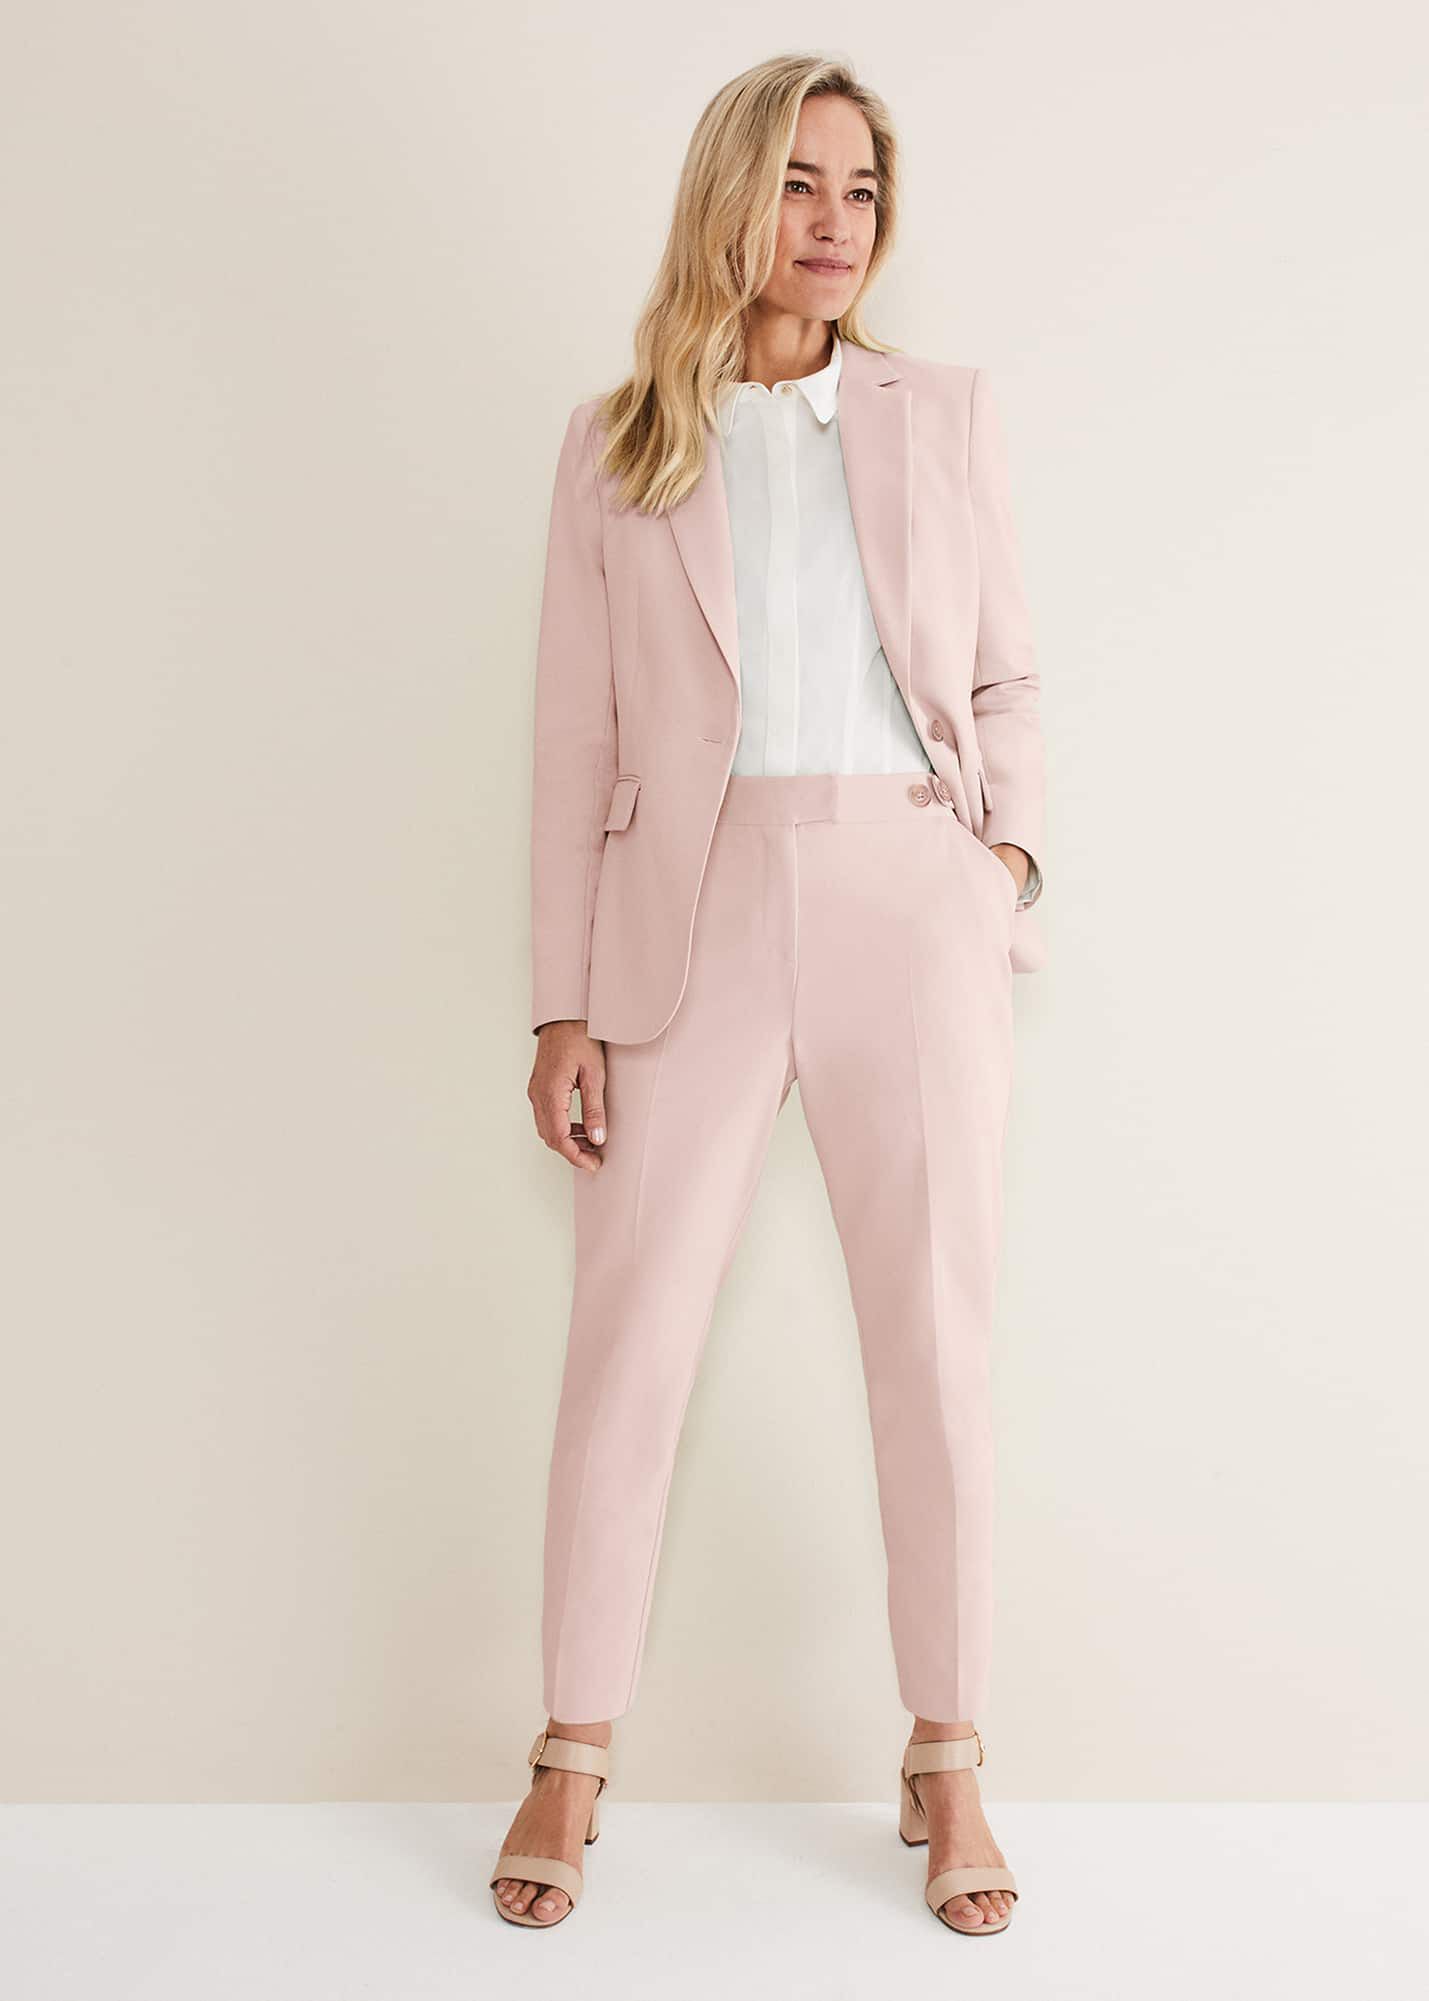 Buy Pink Trousers  Pants for Women by Oxxo Online  Ajiocom